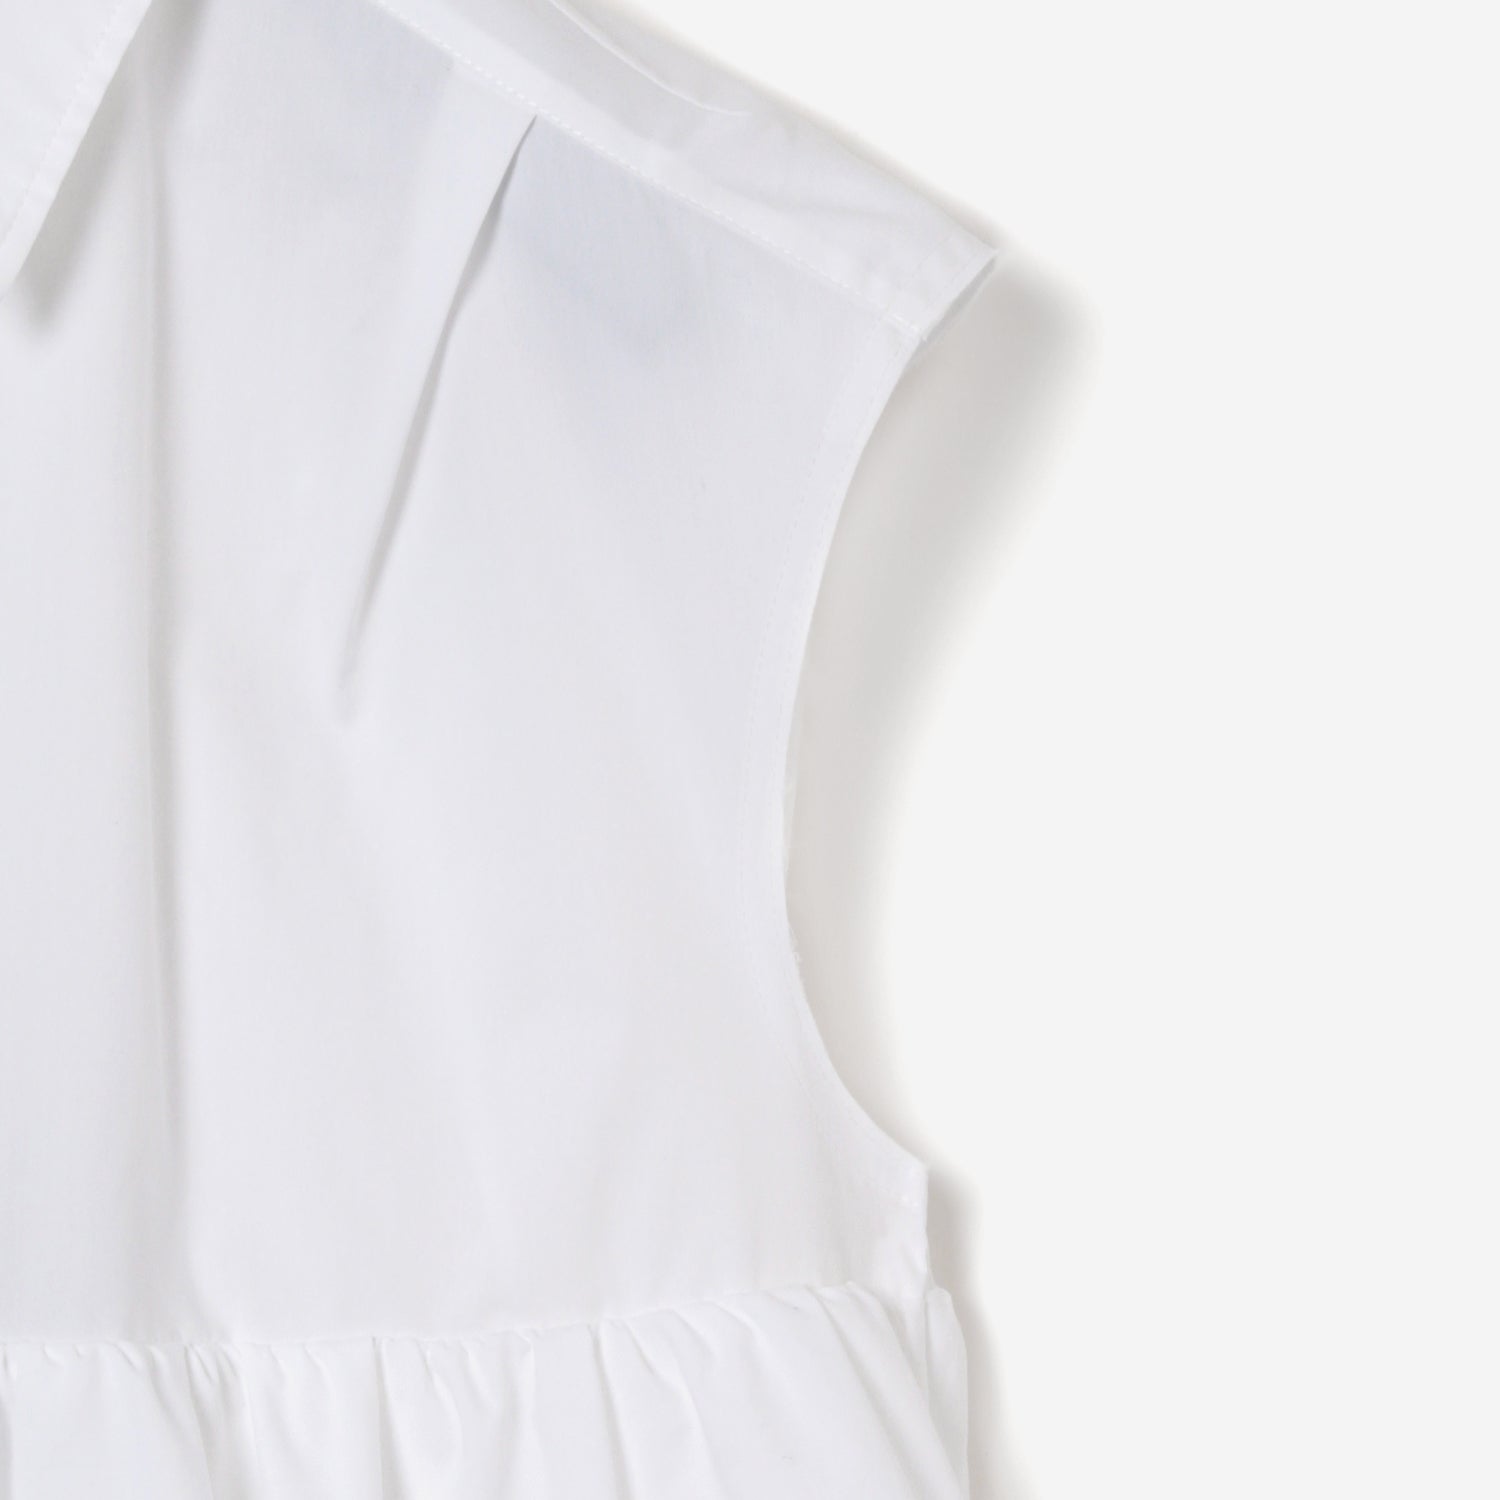 Volume Layered Dress / white